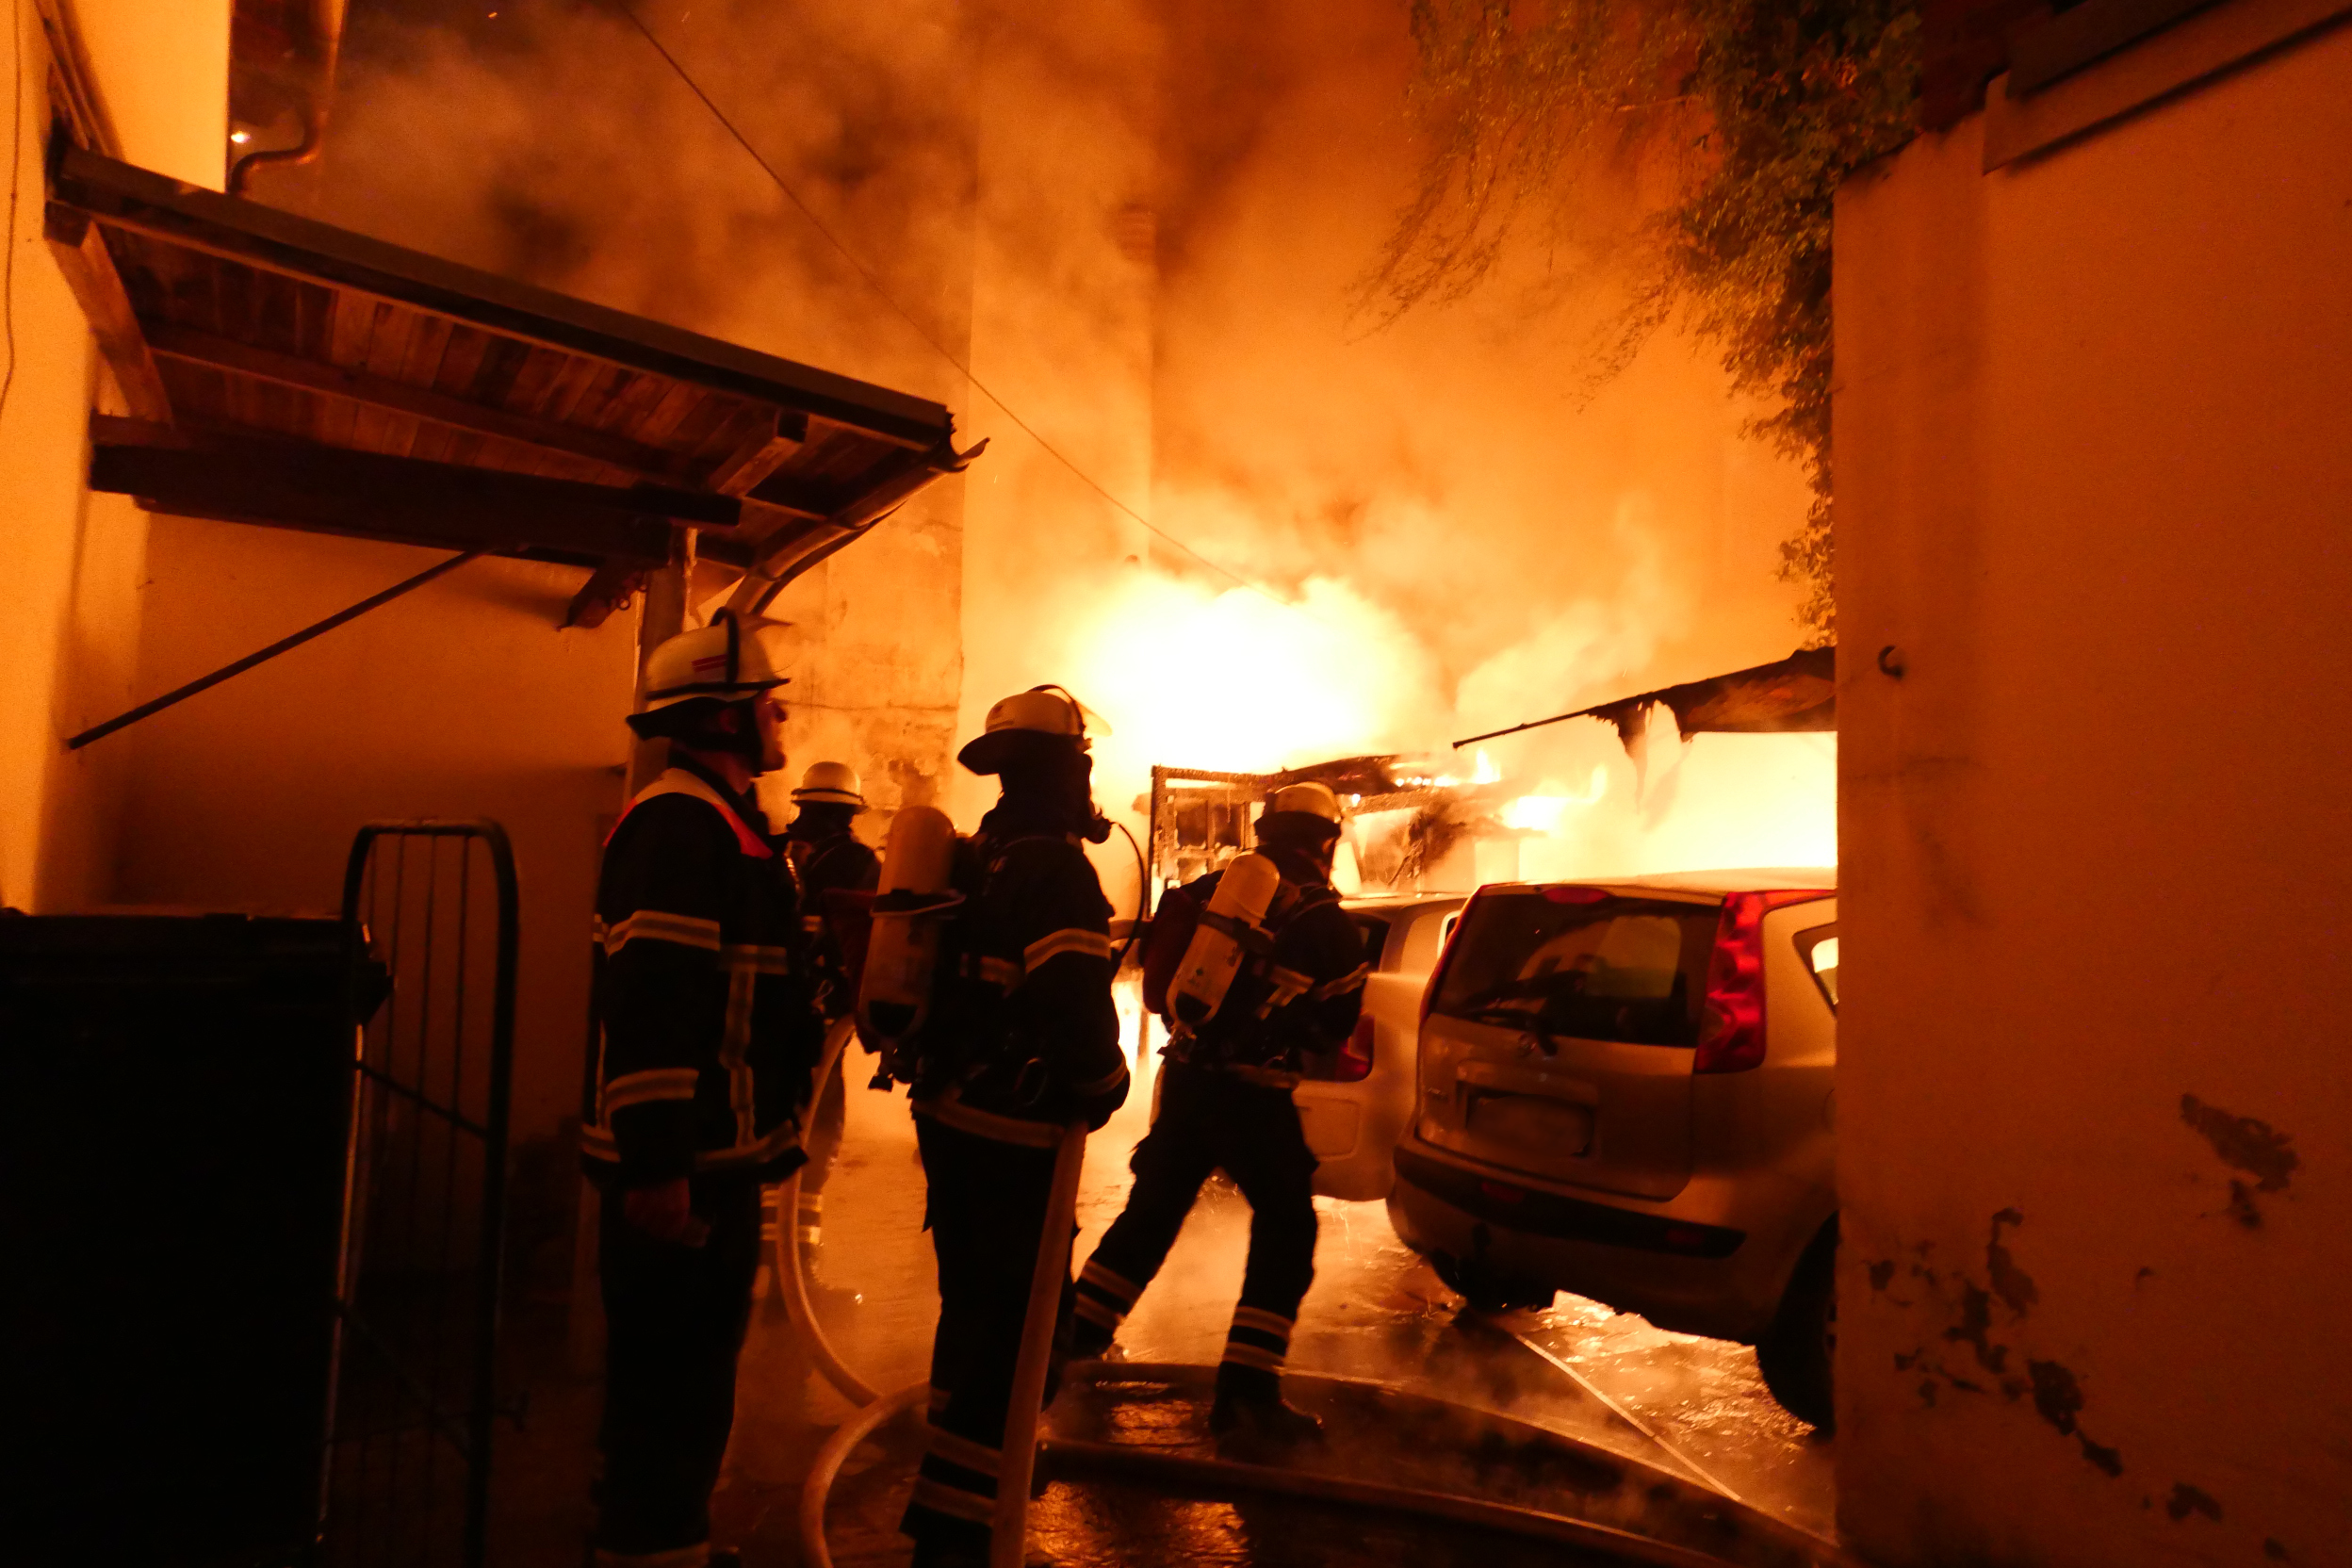 Flammen-Inferno in Lohbrügge: Bei dem Brand wurden sieben Menschen verletzt.